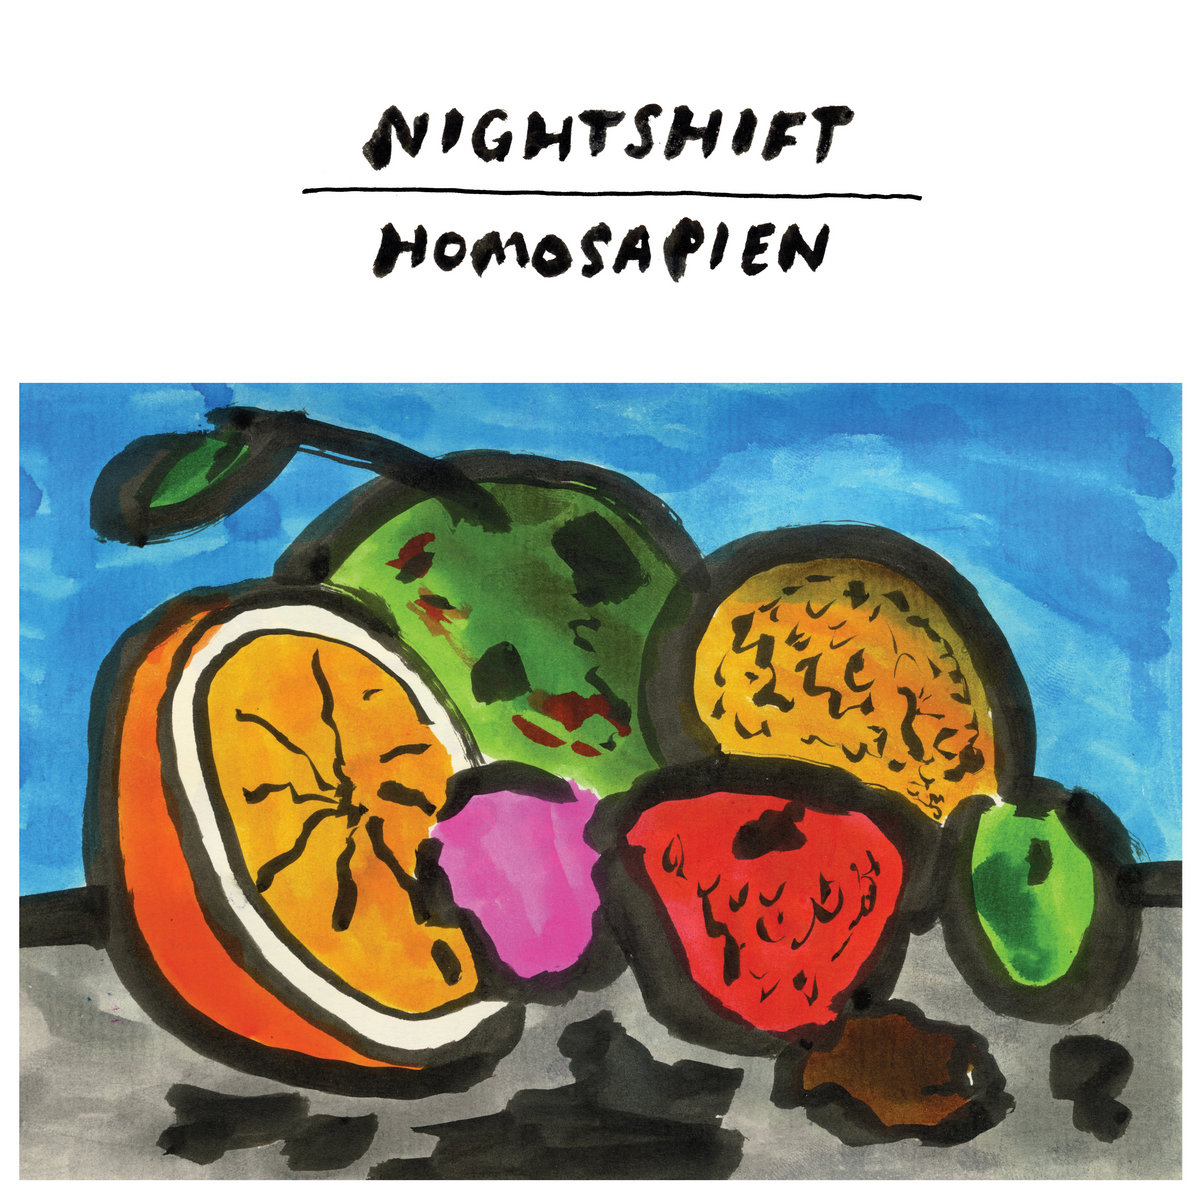 Nightshift | Homosapien | 3hive.com